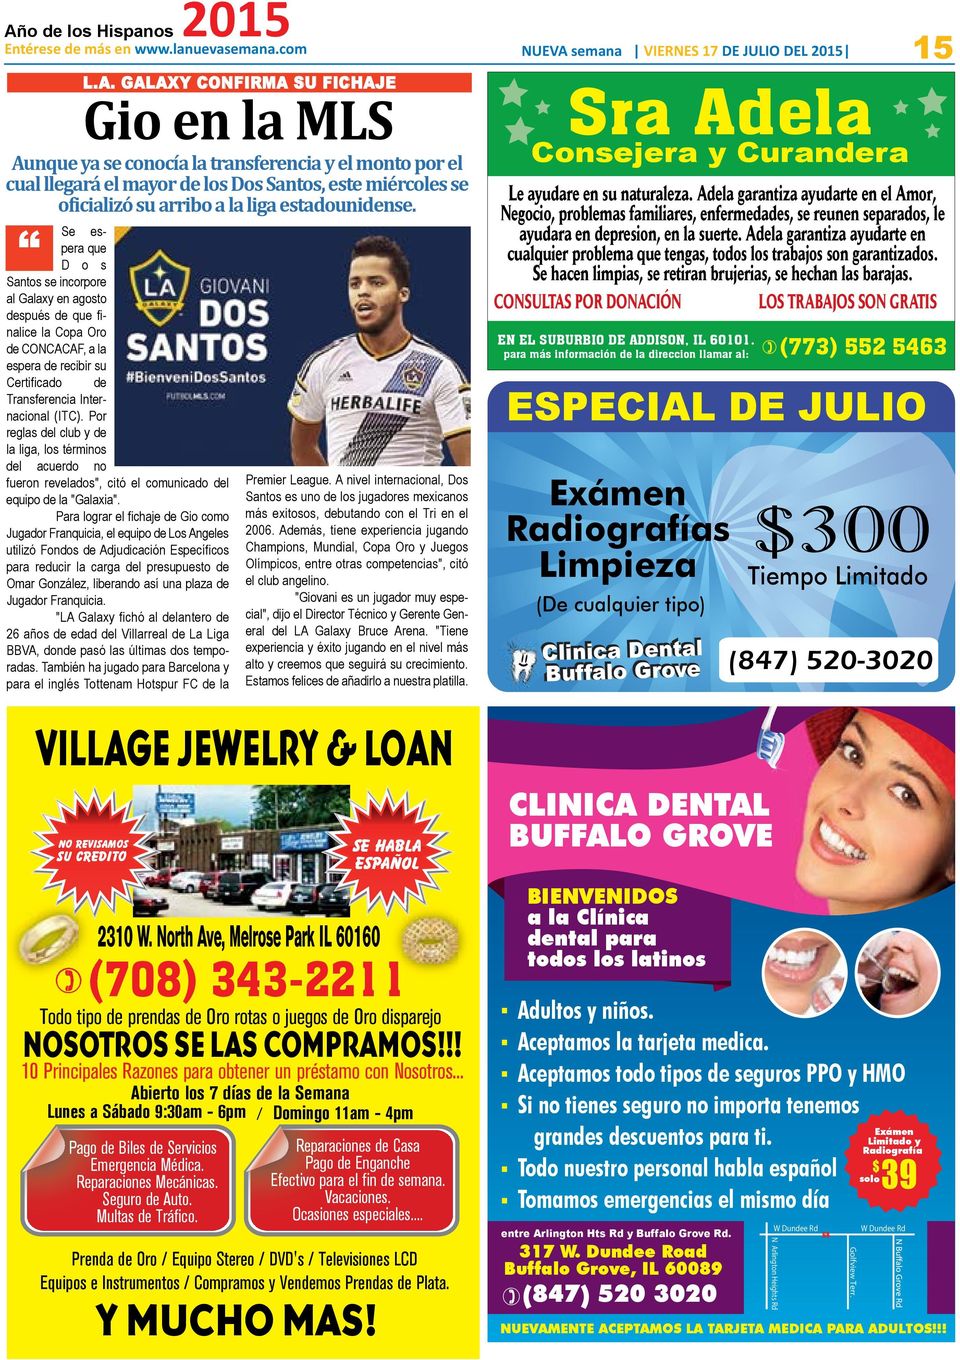 Se espera que D o s Santos se incorpore al Galaxy en agosto después de que finalice la Copa Oro de CONCACAF, a la espera de recibir su Certificado de Transferencia Internacional (ITC).